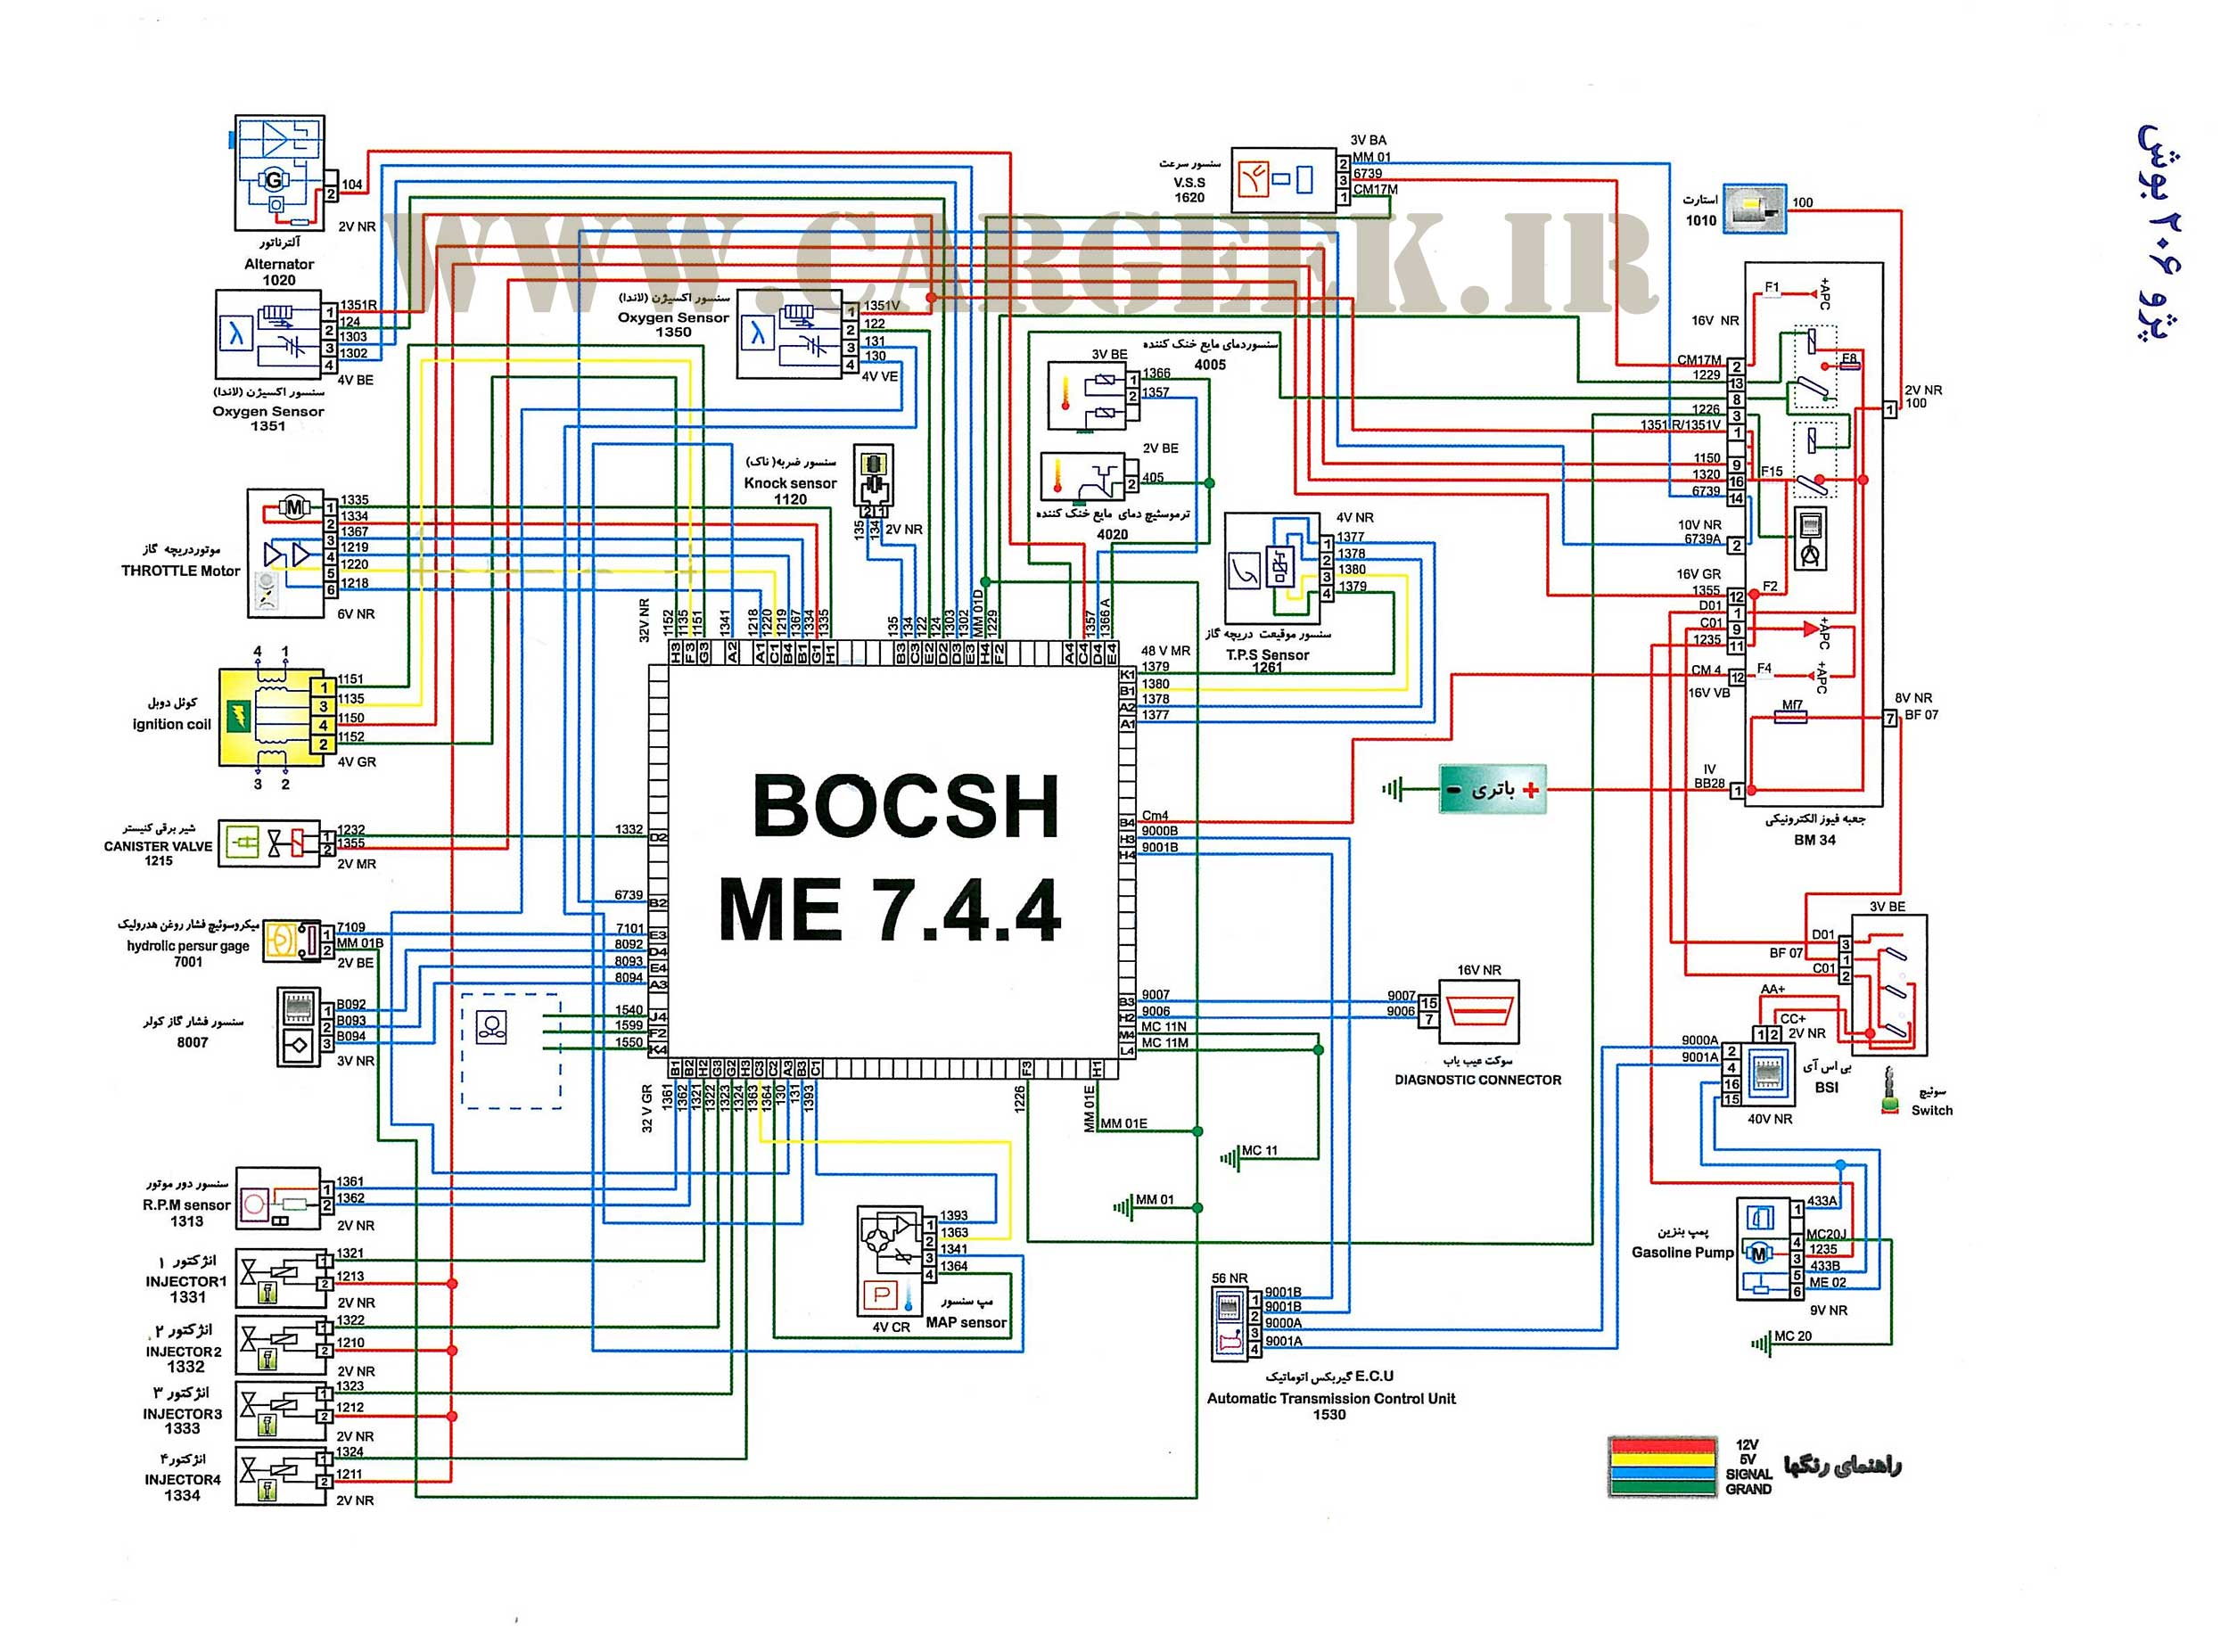 Bosch me7.4.5 схема